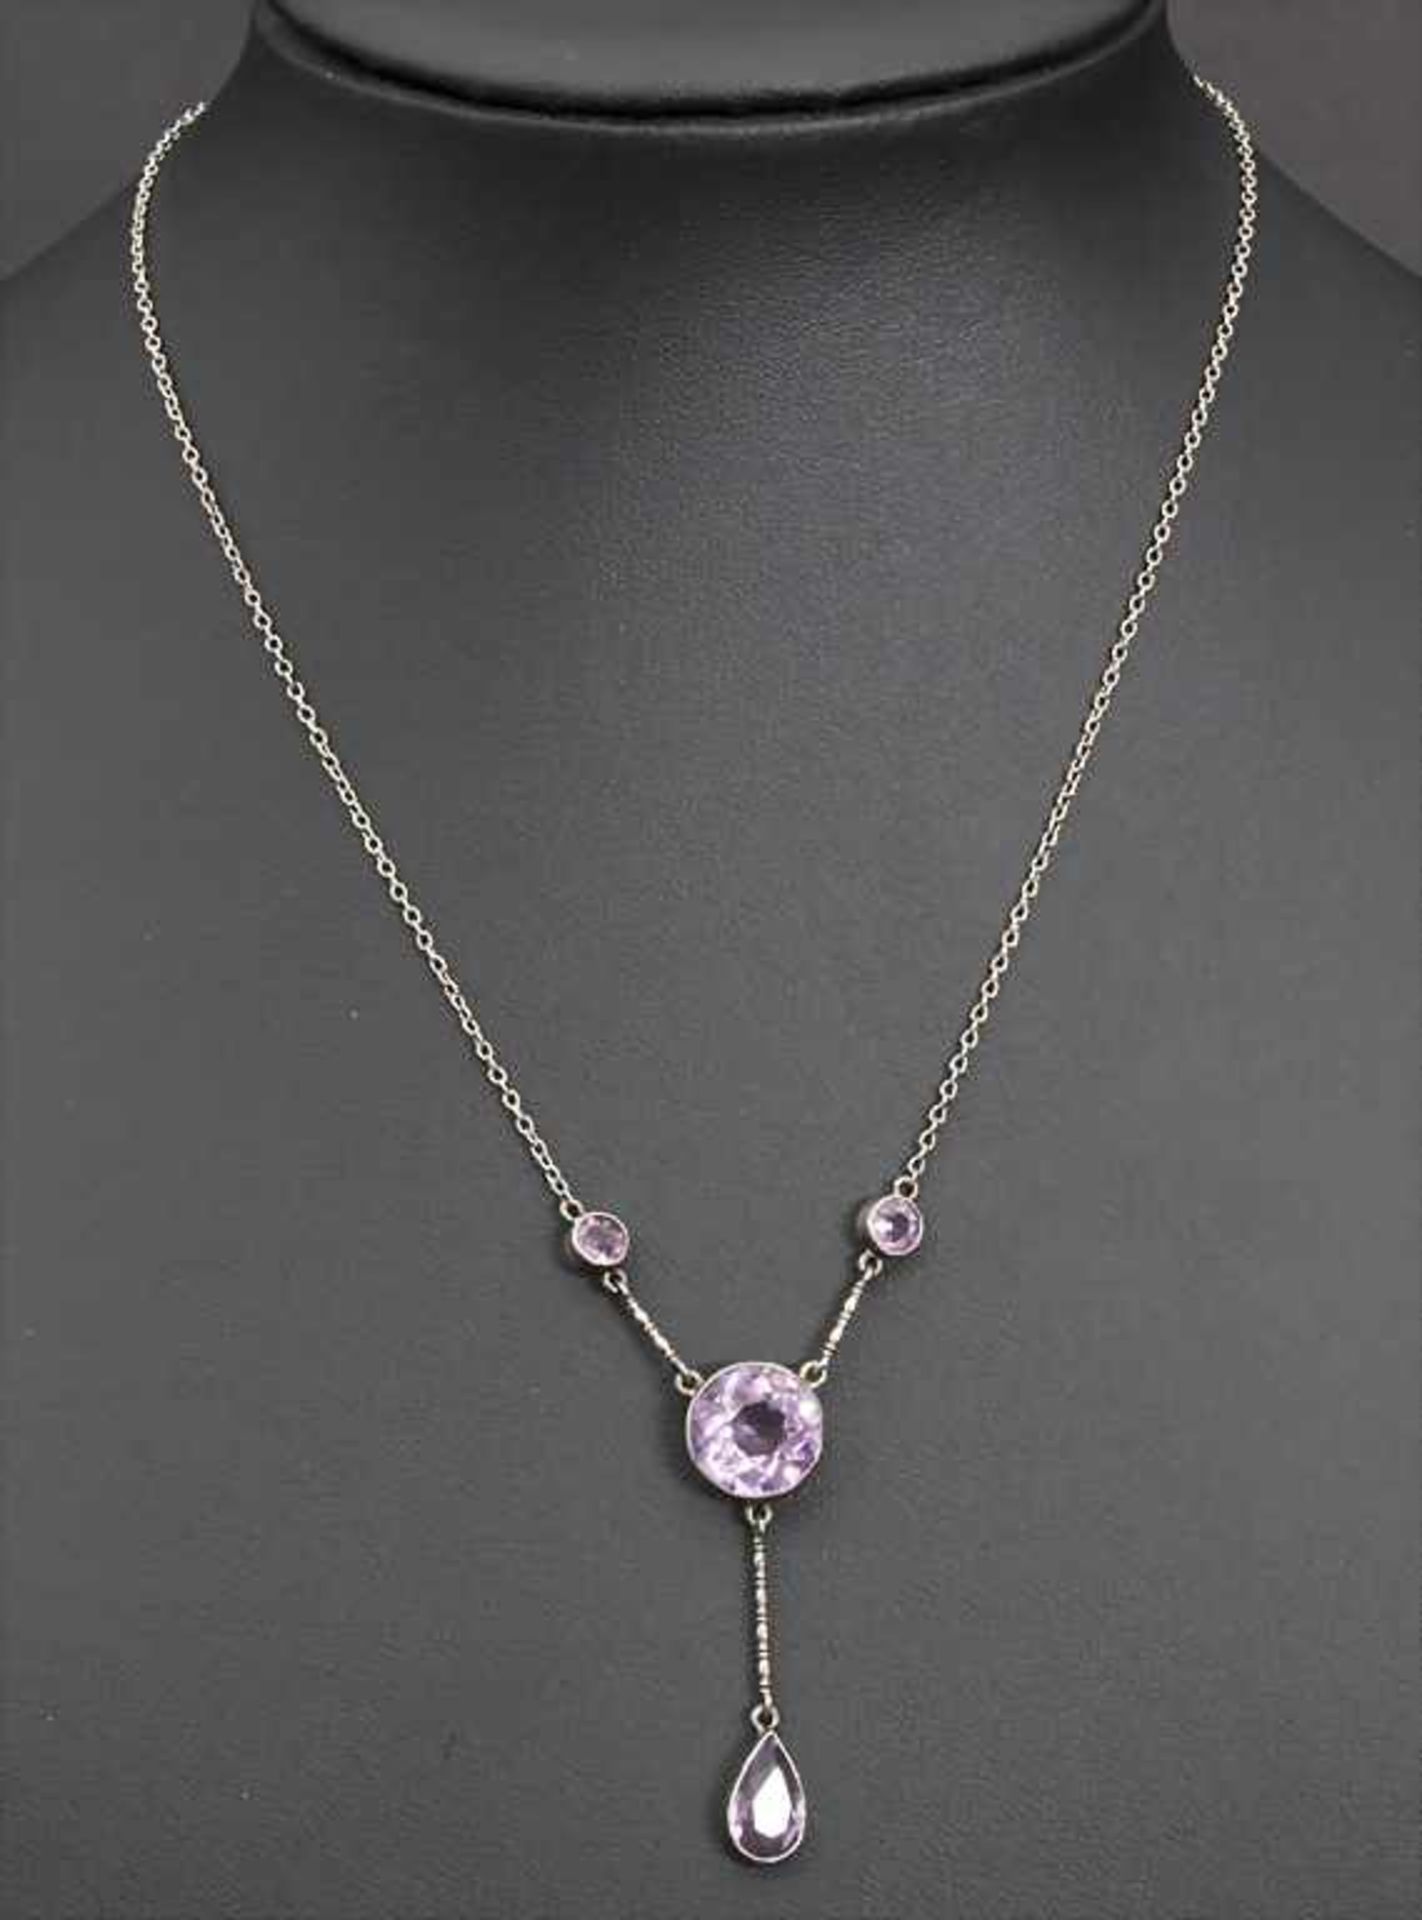 Jugendstil Silber Collier / An Art Nouveau silver necklace - Image 2 of 3